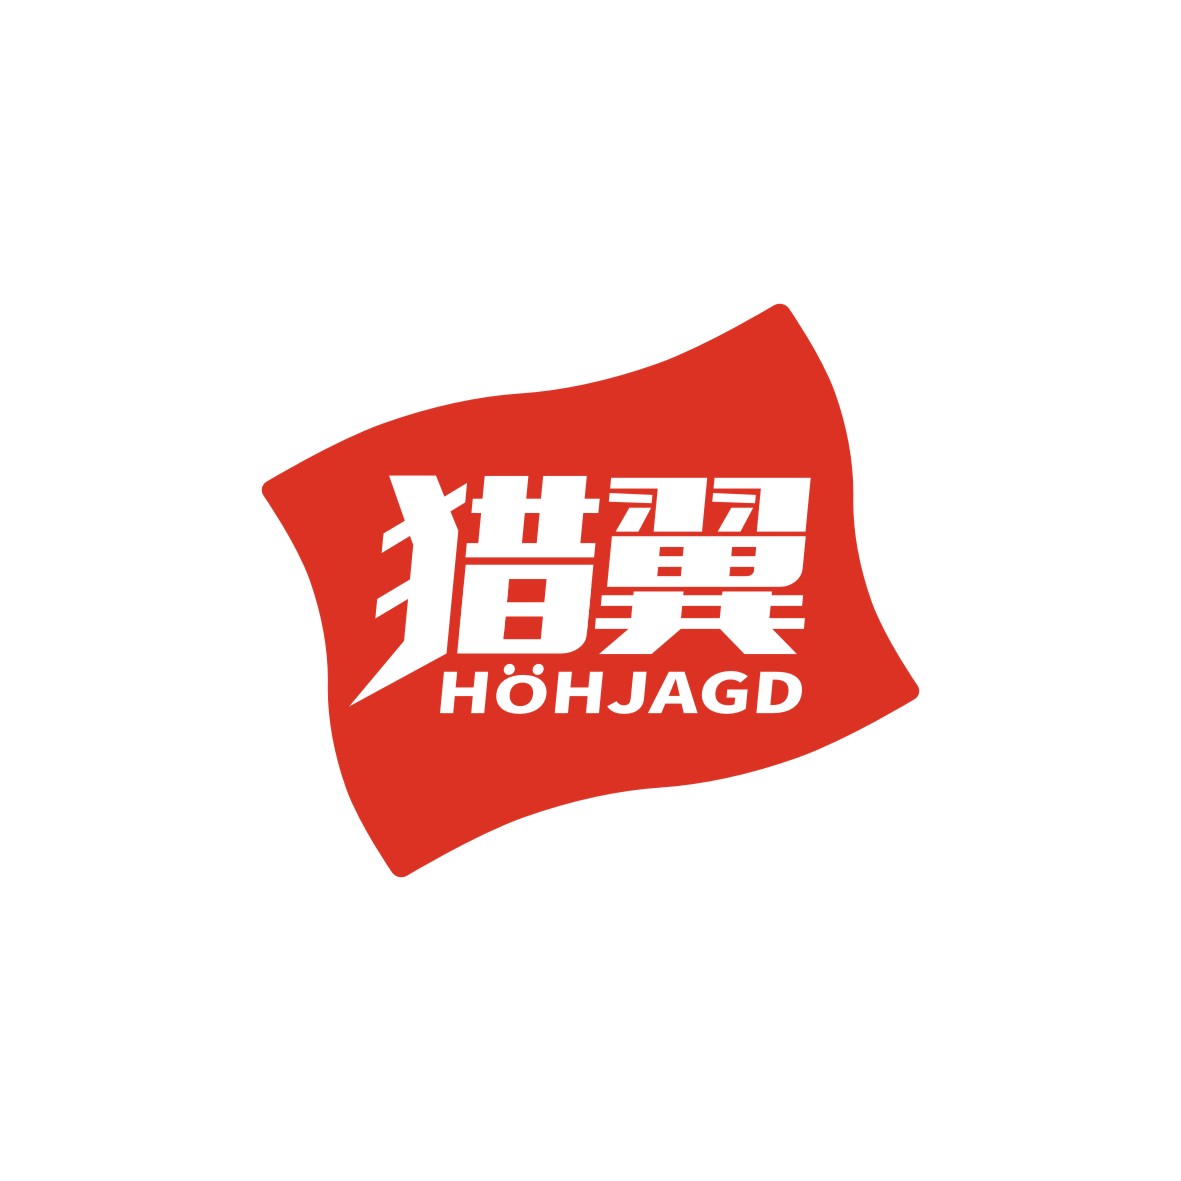 广州欢庆商贸有限公司商标猎翼 HOHJAGD（28类）商标转让流程及费用